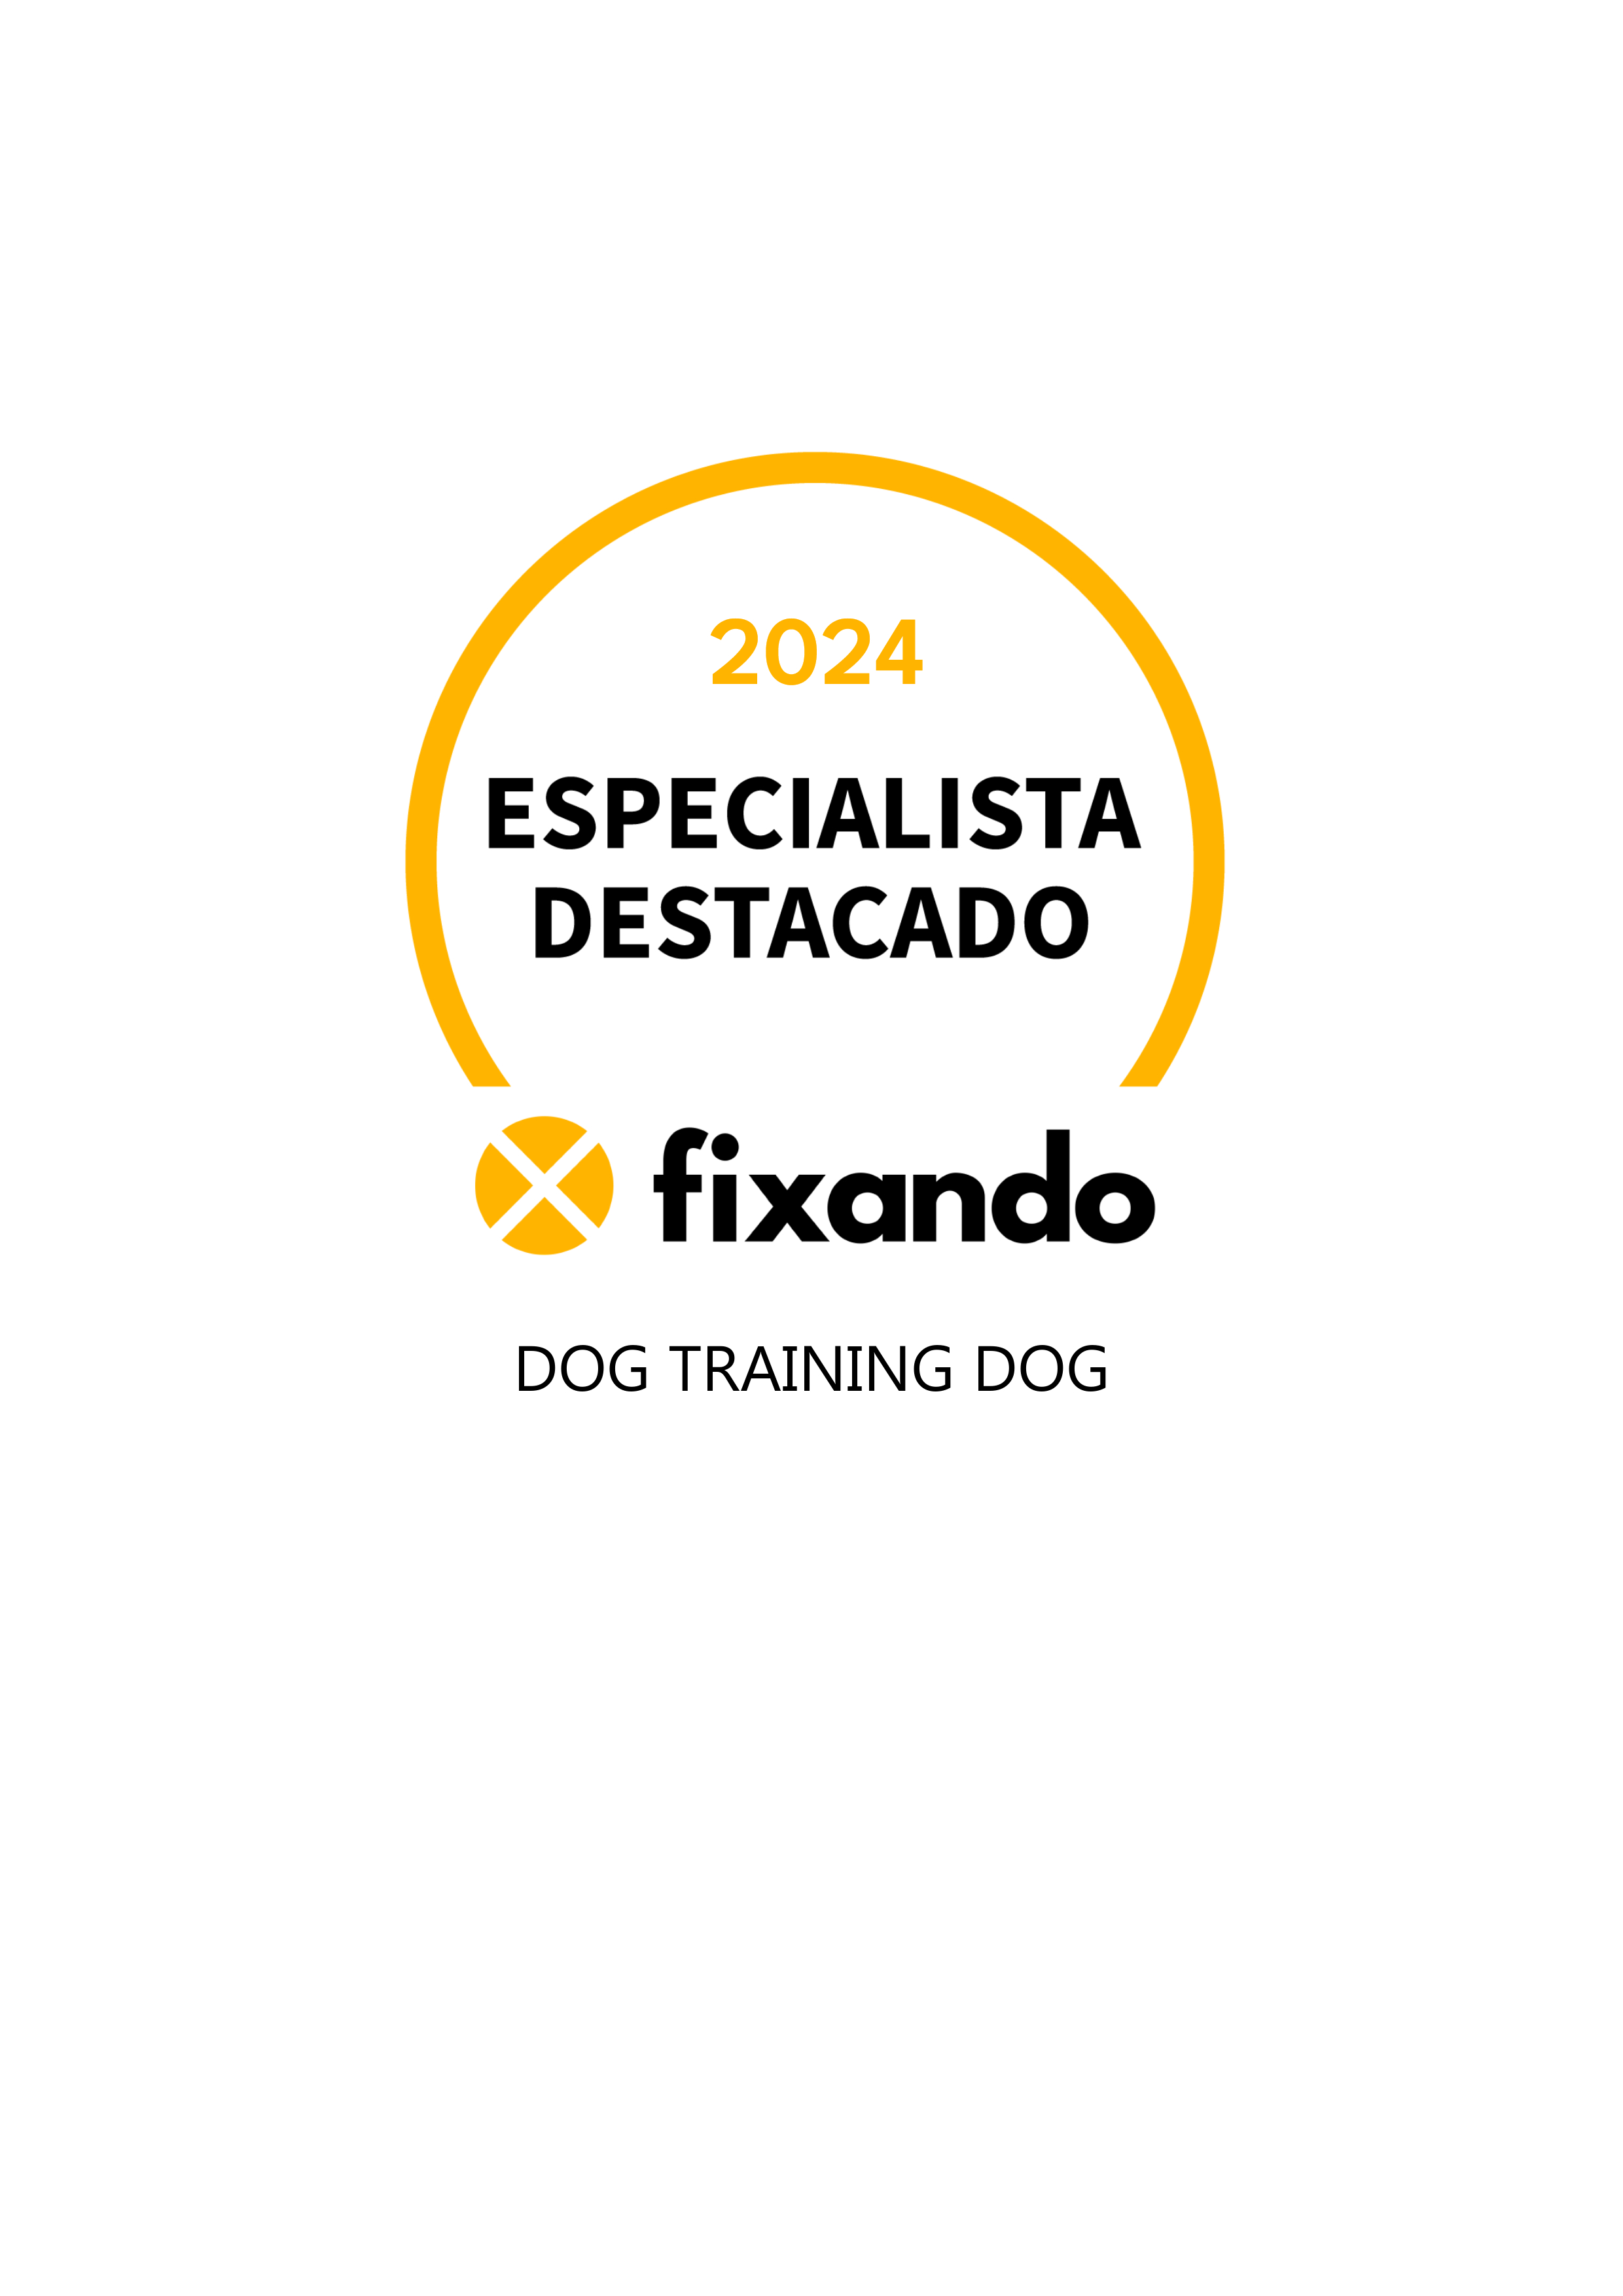 Dog Training Dog - Olhão - Dog Walking